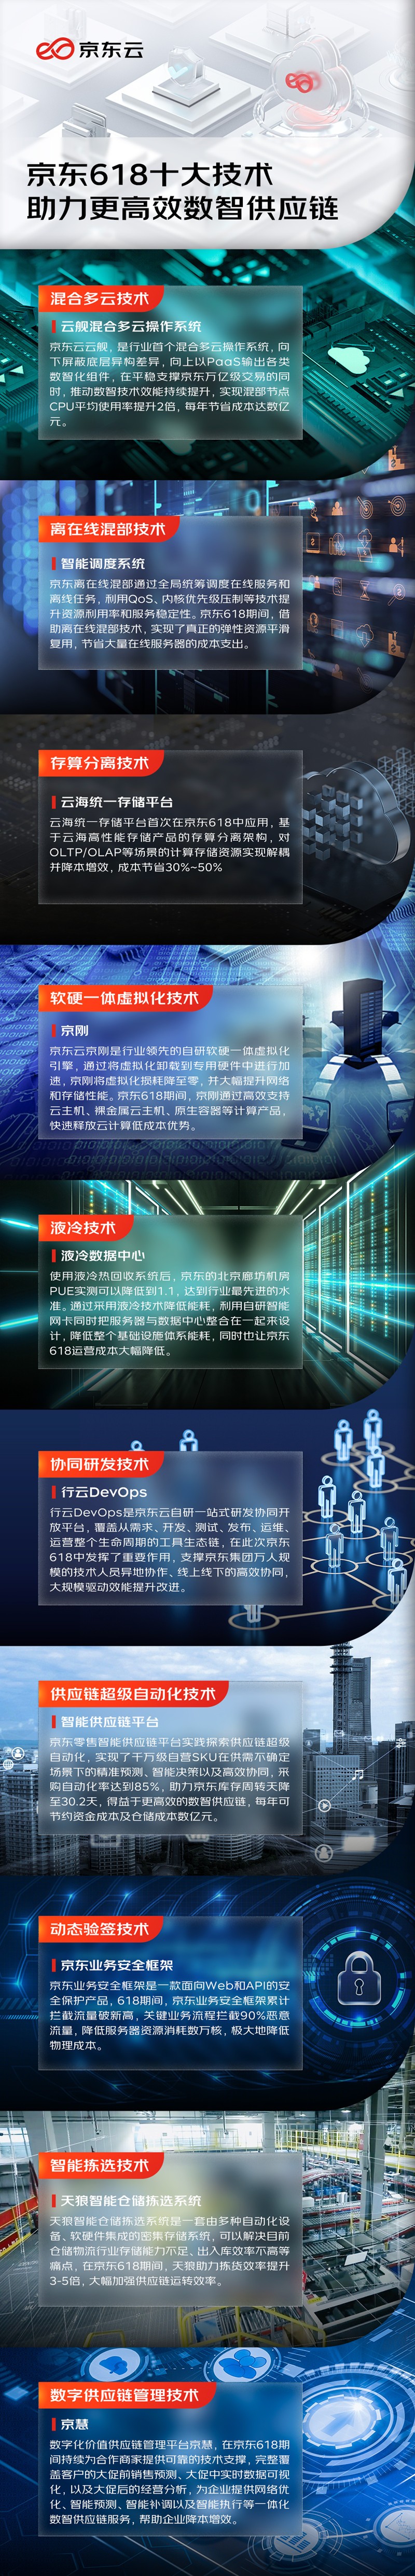 “京东云发布十大技术 高效支撑京东618数智供应链